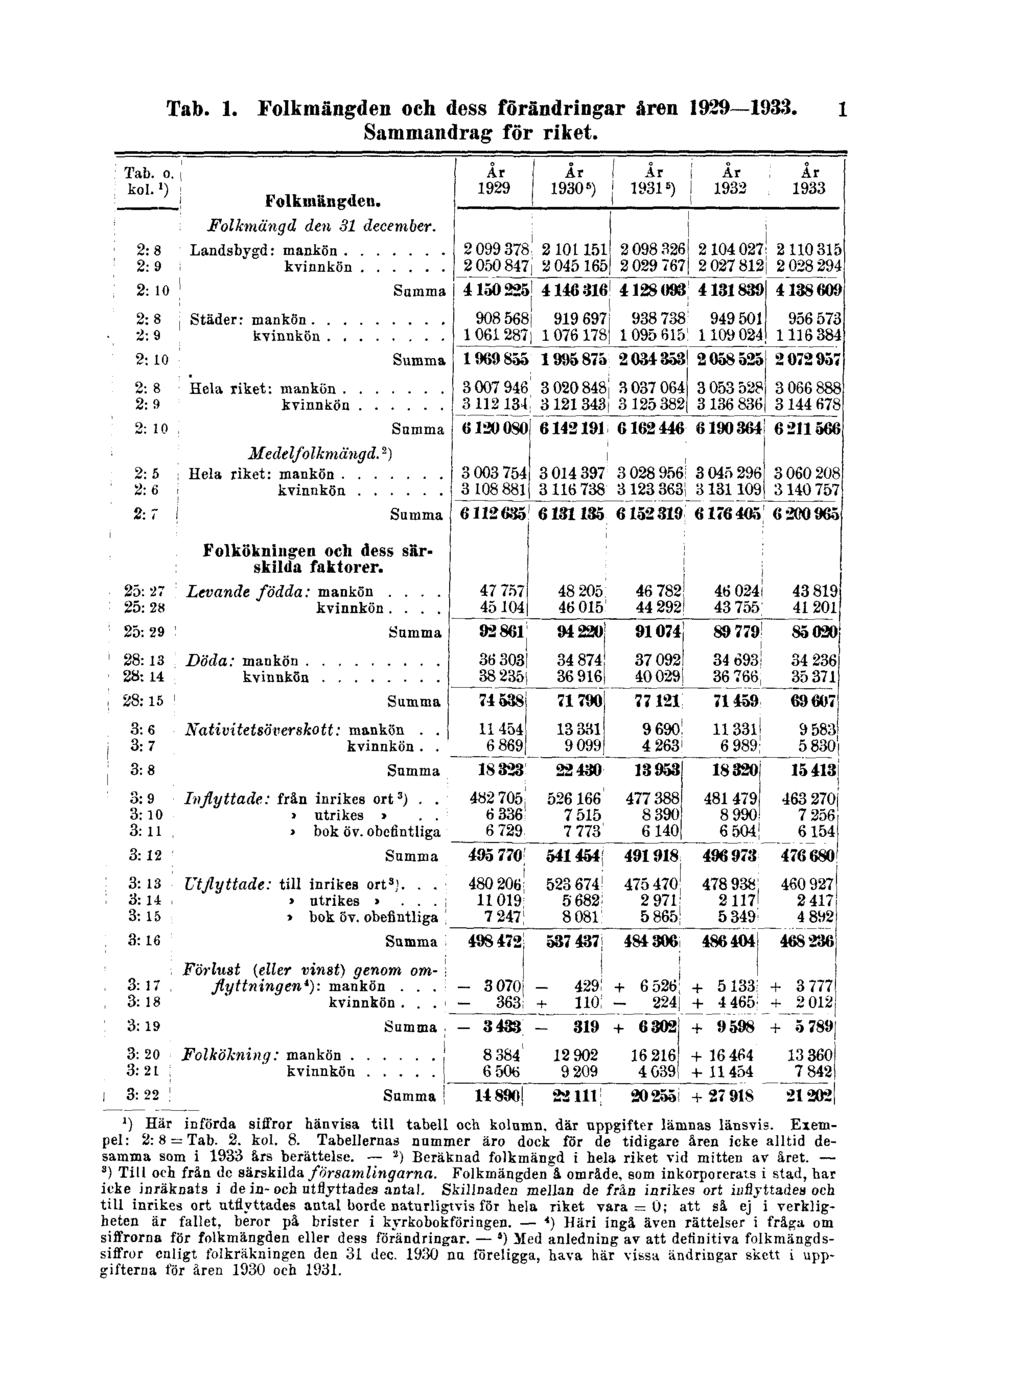 Tab. 1. Folkmängden och dess förändringar åren 1929 1933. 1 Sammandrag för riket. ") Här införda siffror hänvisa till tabell och kolumn, där uppgifter lämnas länsvis. Exempel: 2:8 Tab. 2. kol. 8.